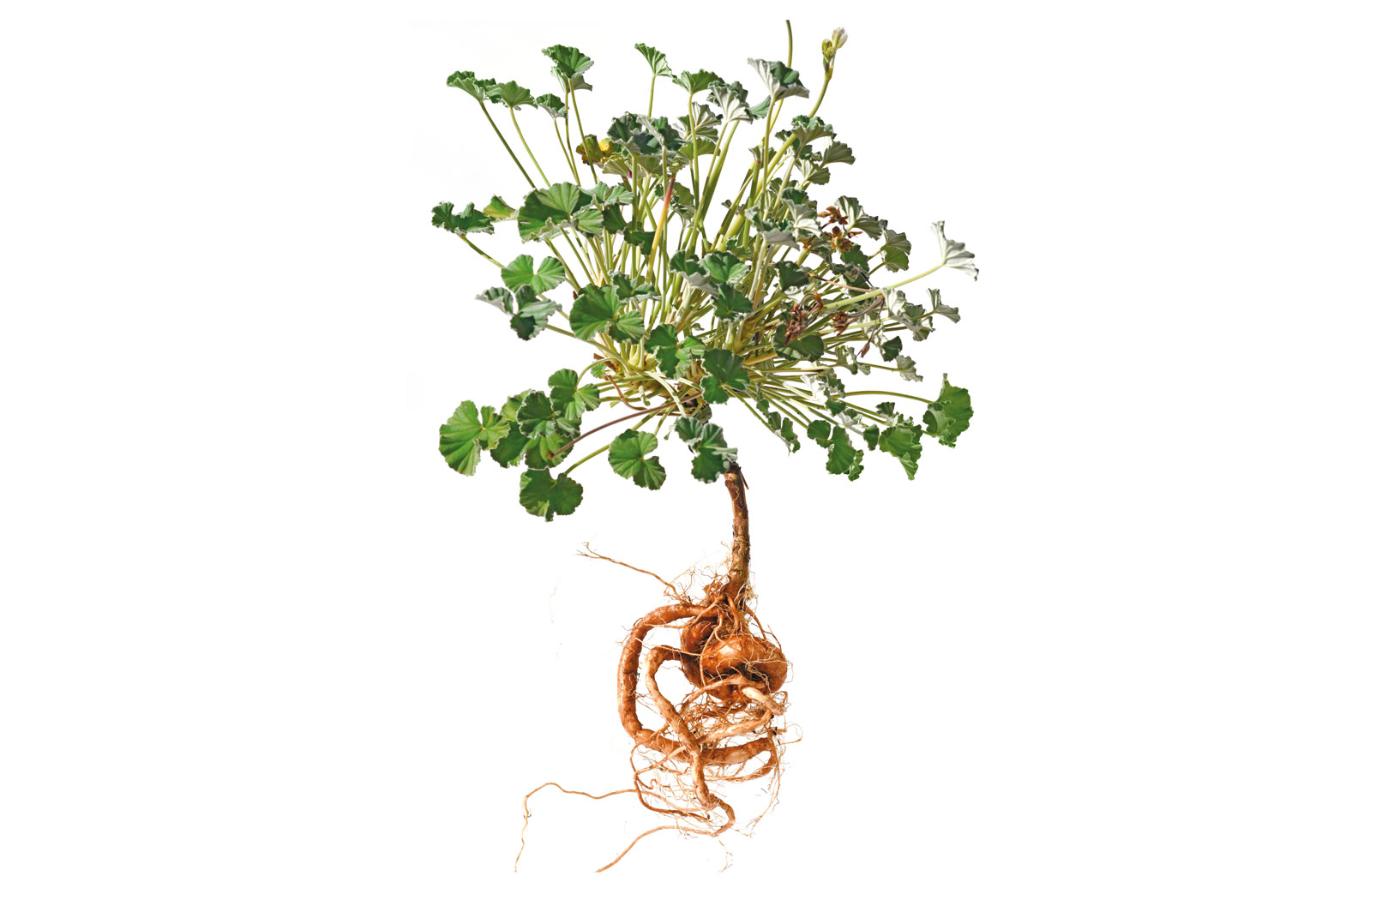 Pelargonium sidoides – południowoafrykańska odmiana pelargonii. O prawo do zysków z jej uprawy walczy kilka lokalnych społeczności.